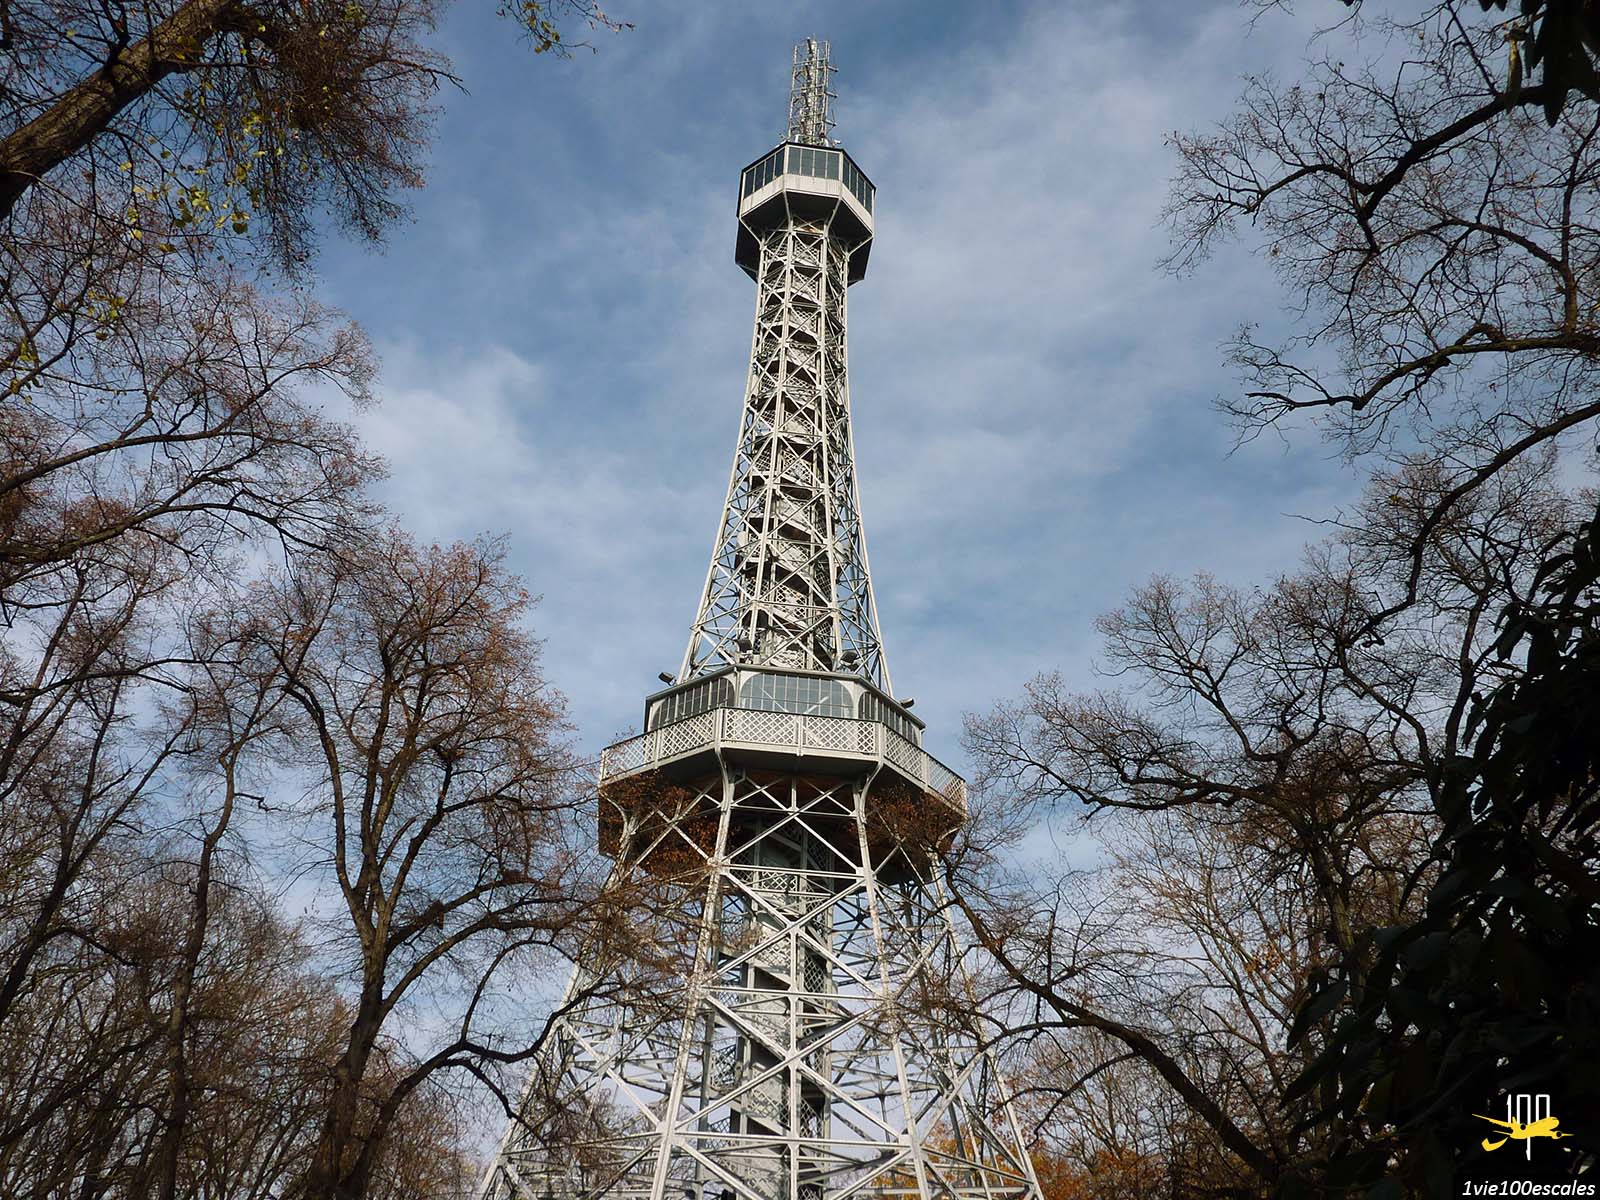 Avec 60 mètres de haut et une structure semblable à celle de la Tour Eiffel, la Tour de Petřín est le belvédère le plus élevé de Prague